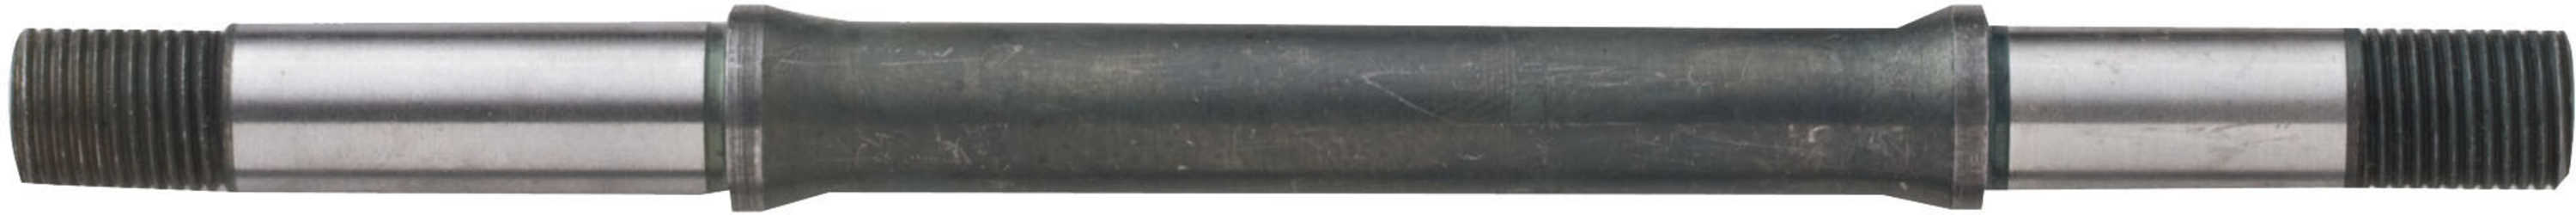 Låsmutter Bontrager till Race Lite drevsida 130/135 mm svart från Bontrager